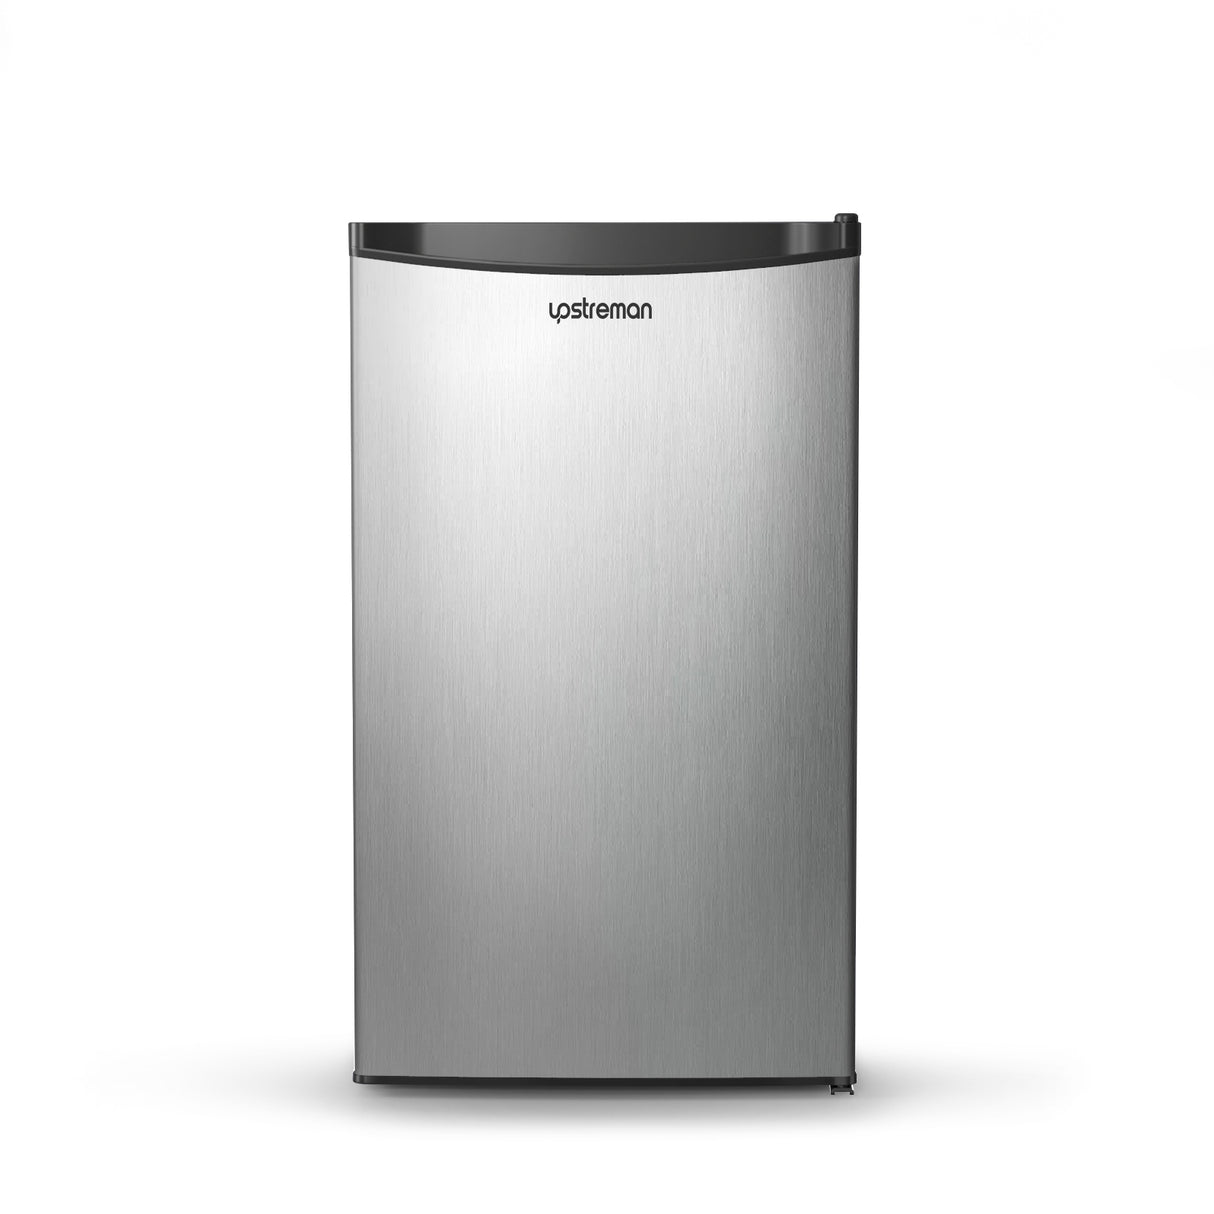  Upstreman Mini refrigerador de 3.2 pies cúbicos con congelador,  puerta individual, termostato ajustable, refrigerador para dormitorio,  oficina, dormitorio, negro BR321 : Electrodomésticos